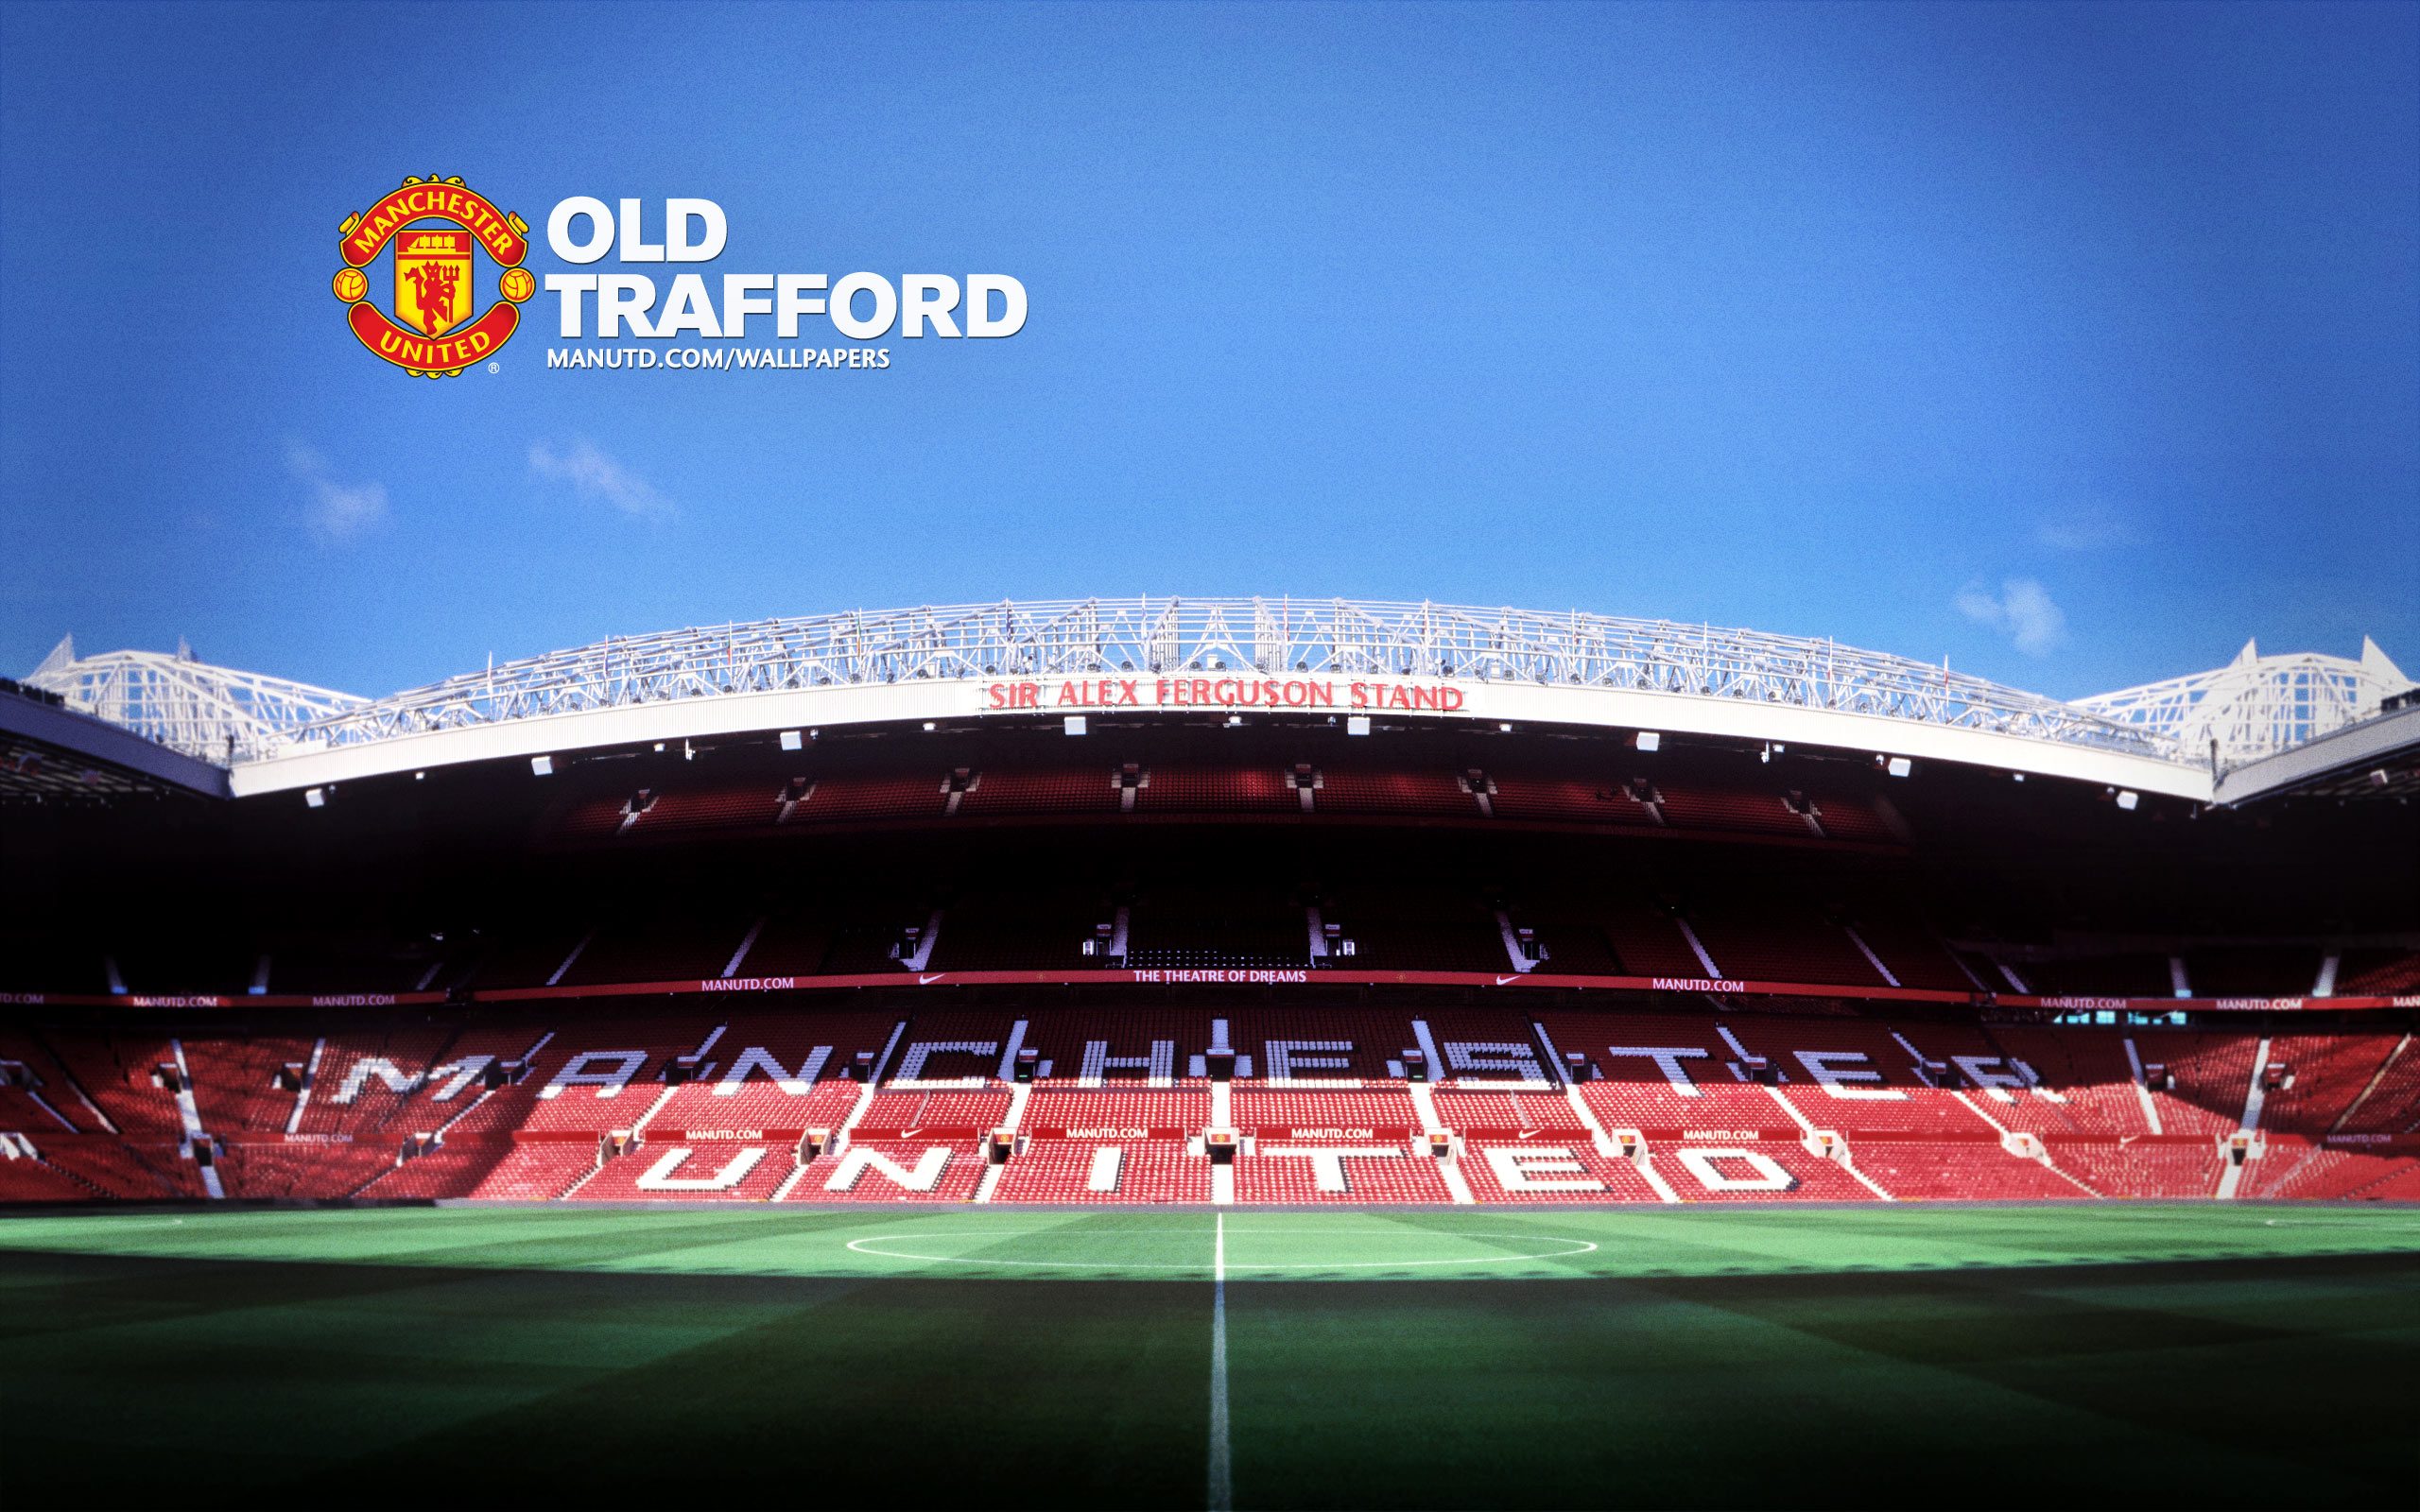 Tải miễn phí hình nền Old Trafford 2012 2013 SAF Stand ngay bây giờ và đưa màn hình của bạn trở thành một phần của sân vận động huyền thoại này. Hình nền tuyệt đẹp này sẽ khiến bạn cảm thấy như đang ngồi trên khán đài, ủng hộ Manchester United trong những trận đấu cuồng nhiệt nhất.